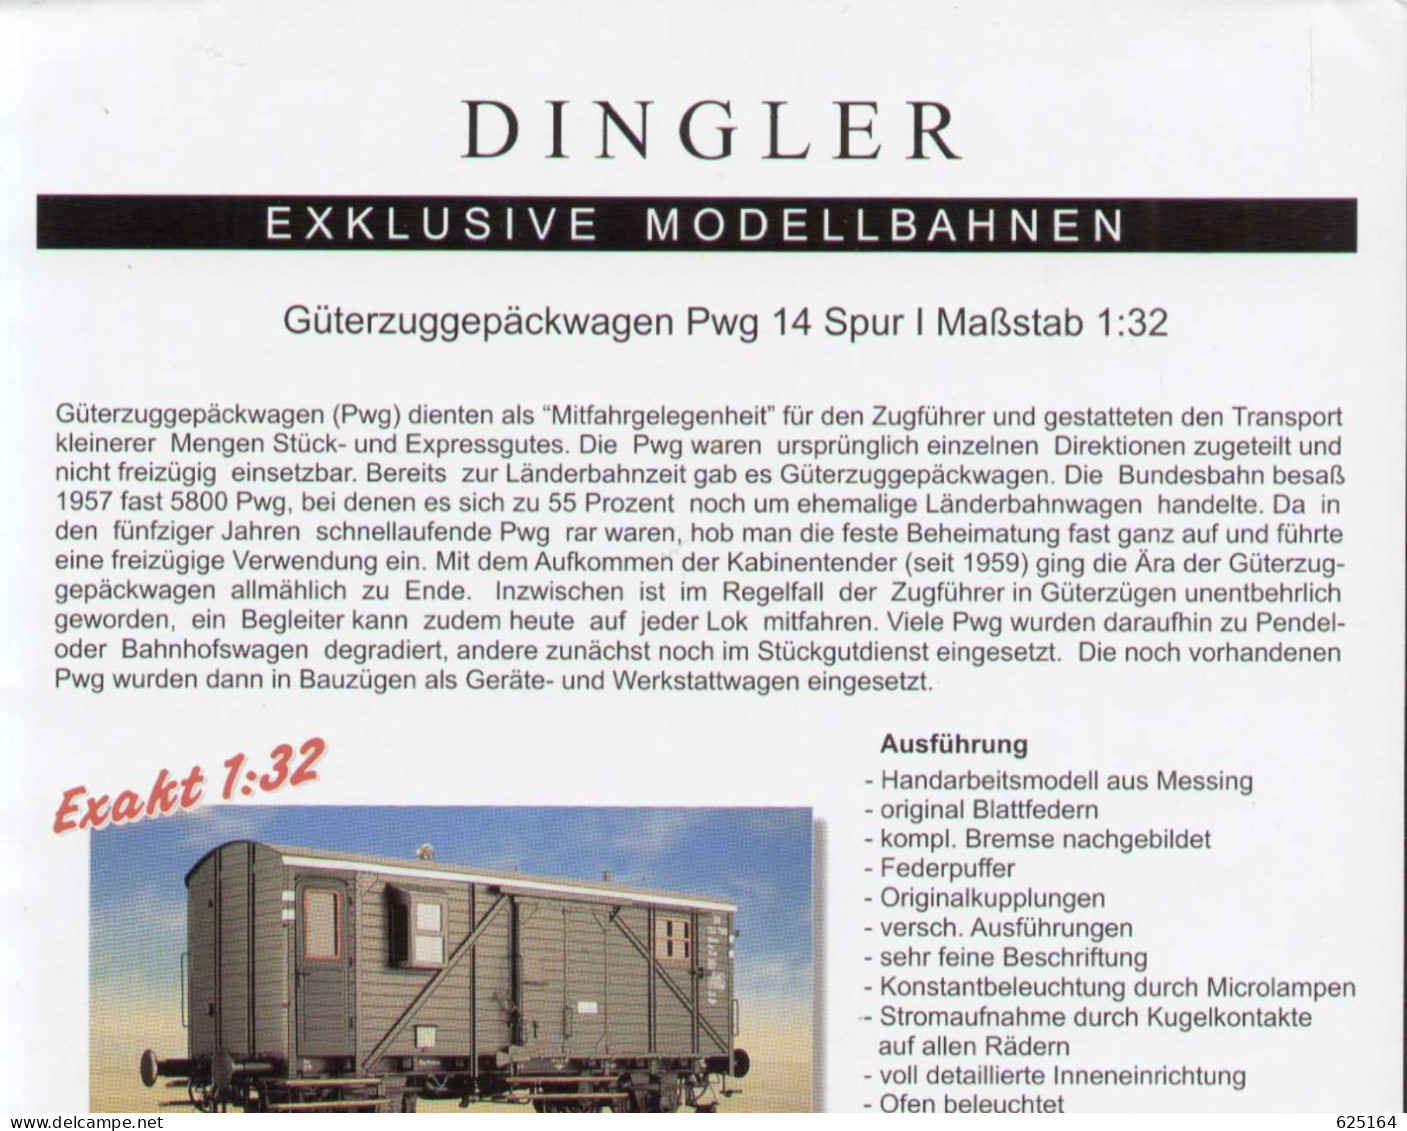 Catalogue DINGLER EXCLUSIVE MODELLBAHNEN 1999 Spur I Informationsblatt - German